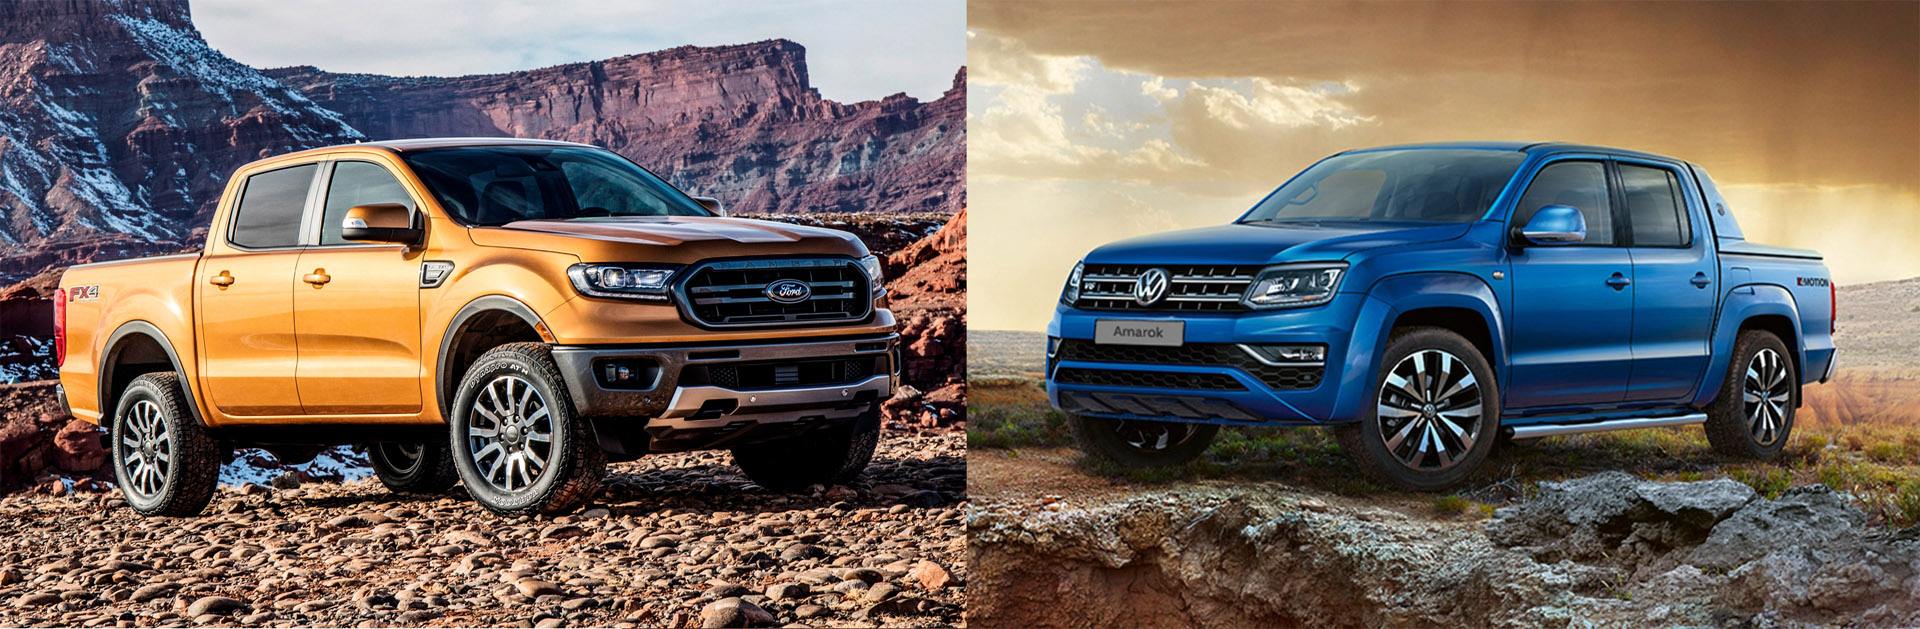 Volkswagen y Ford anuncian su alianza para fabricar pickups y furgonetas